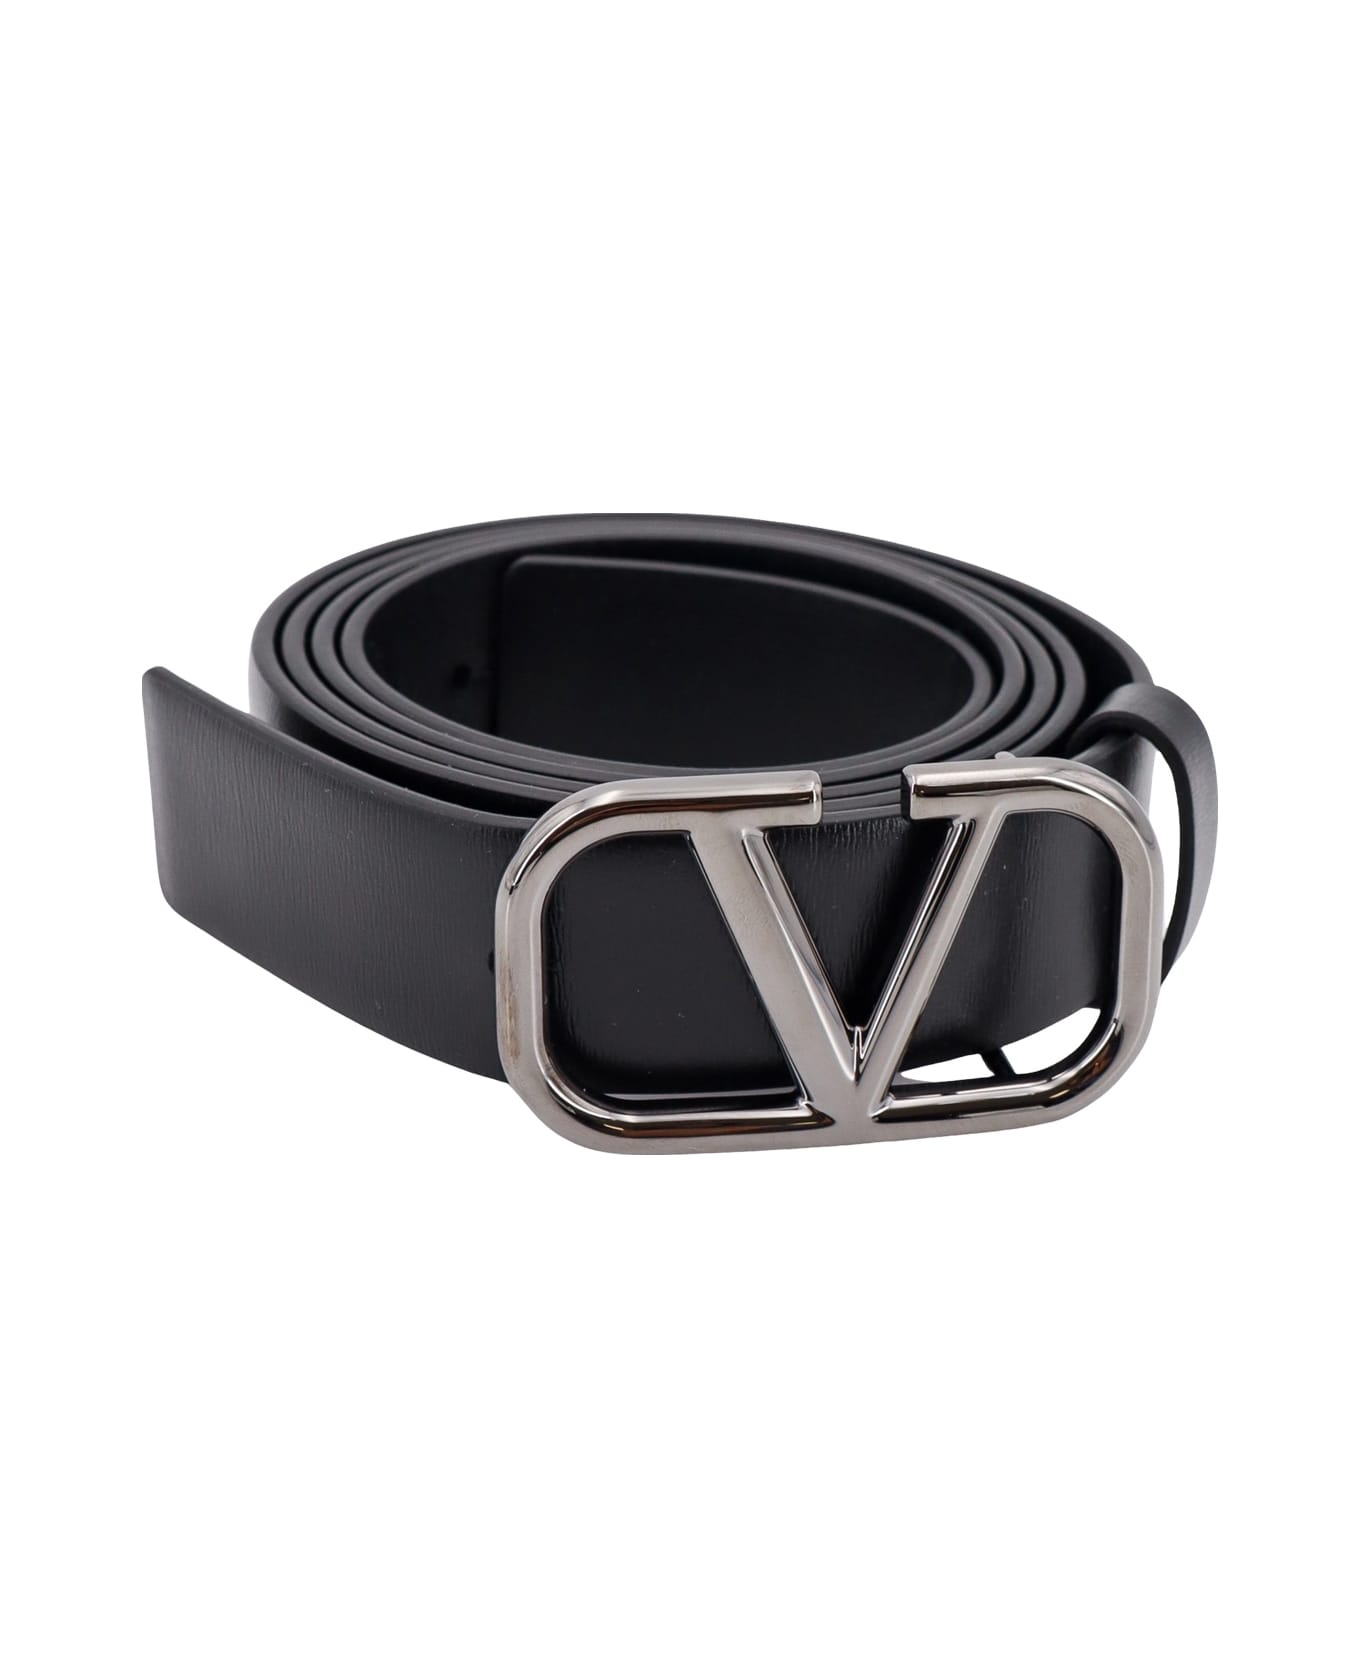 Valentino Garavani Vlogo Belt - Black